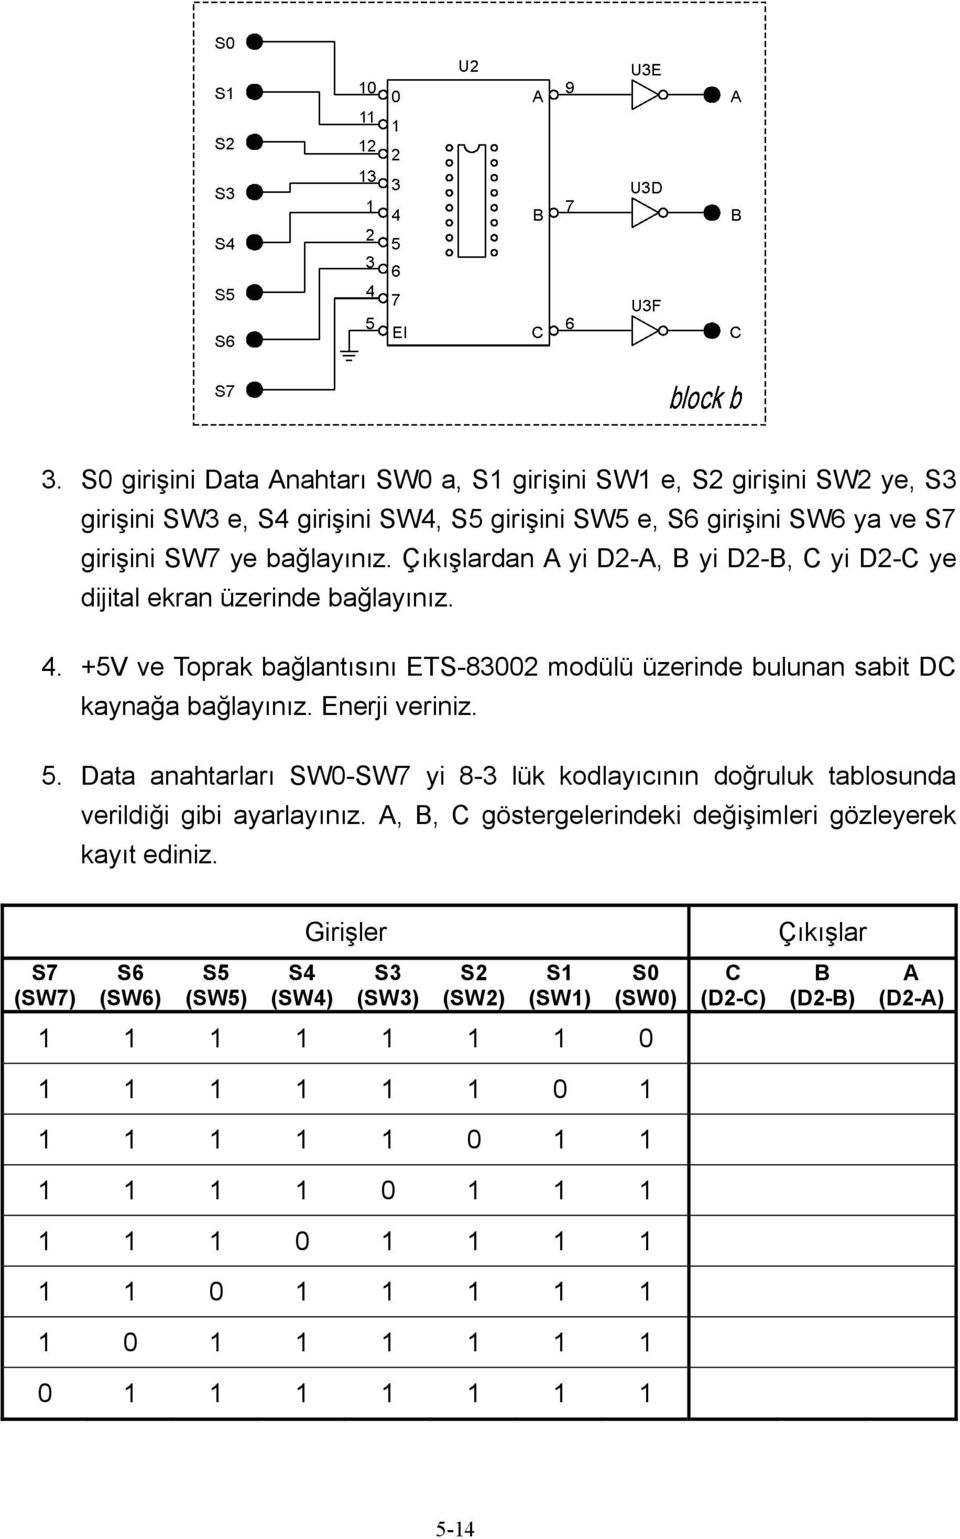 Data anahtarları SW0-SW7 yi 8-3 lük kodlayıcının doğruluk tablosunda verildiği gibi ayarlayınız. A, B, C göstergelerindeki değişimleri gözleyerek kayıt ediniz.